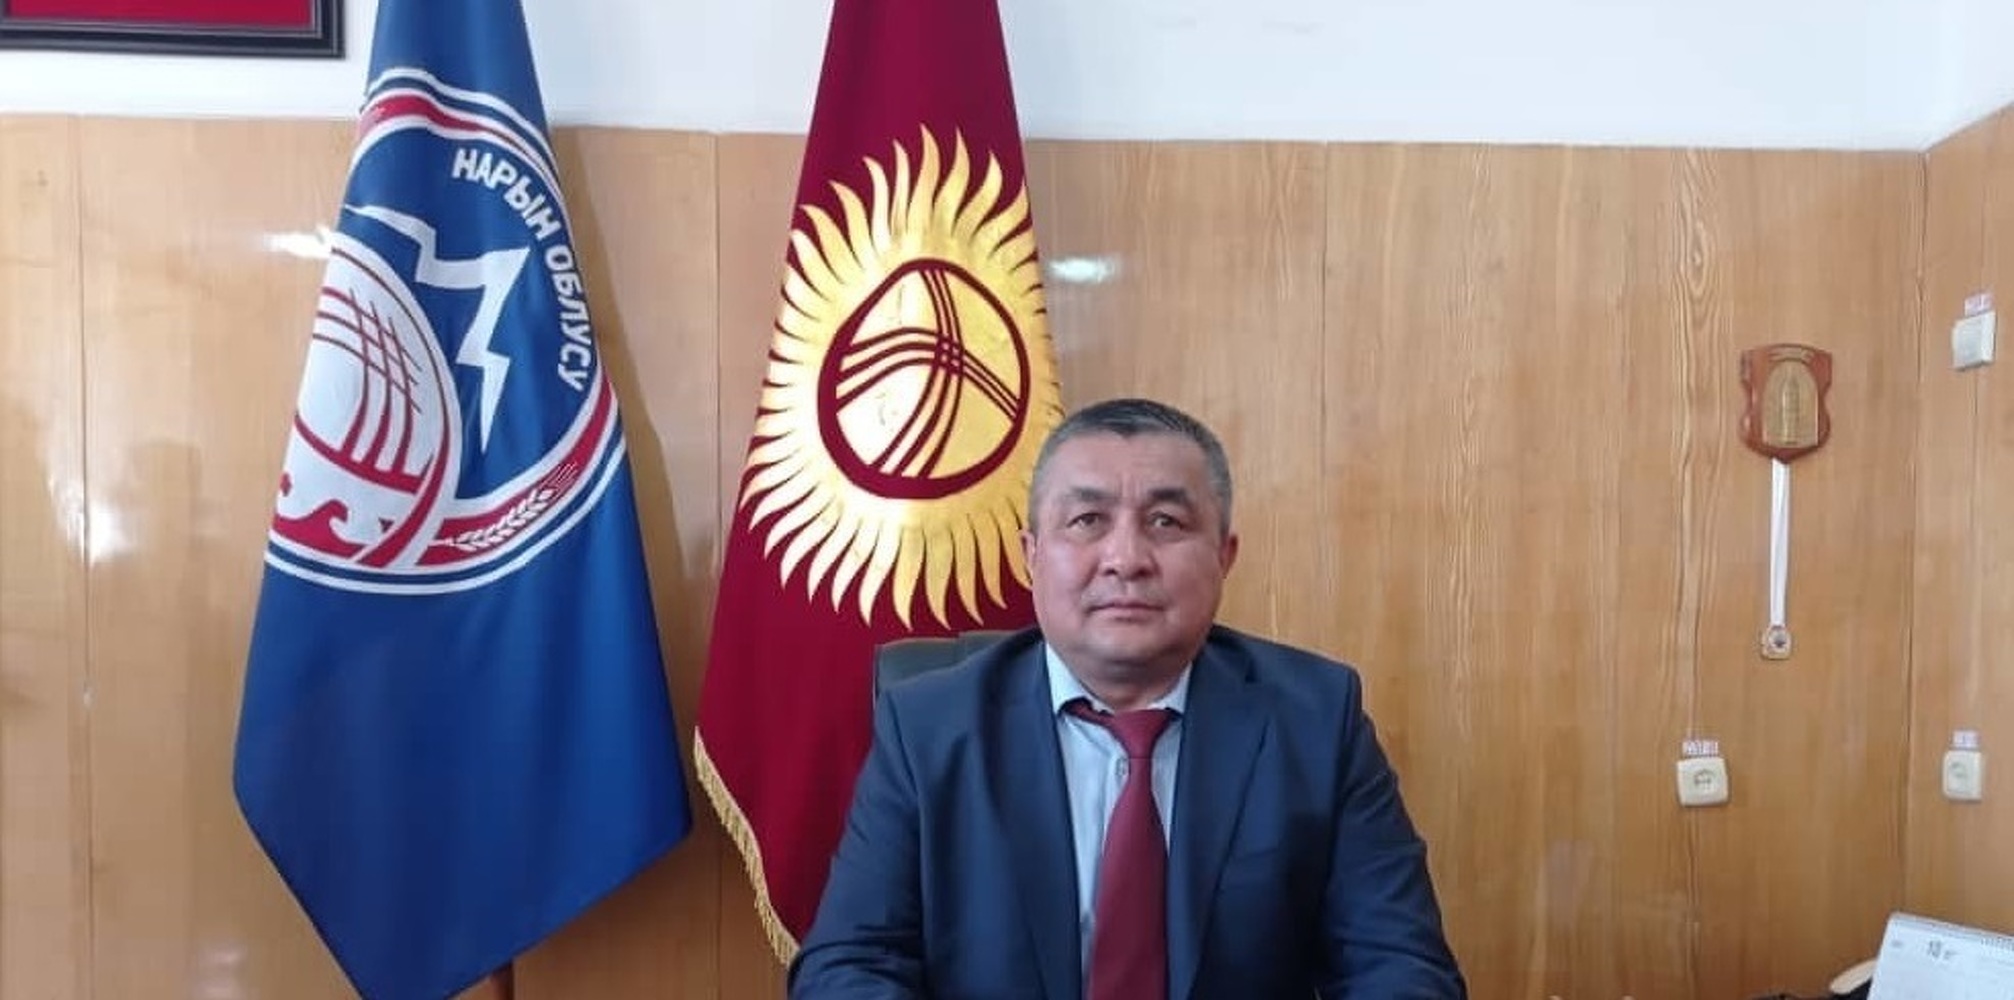 Сабыркул Ашимбаев стал новым полпредом правительства в Нарыне — Today.kg